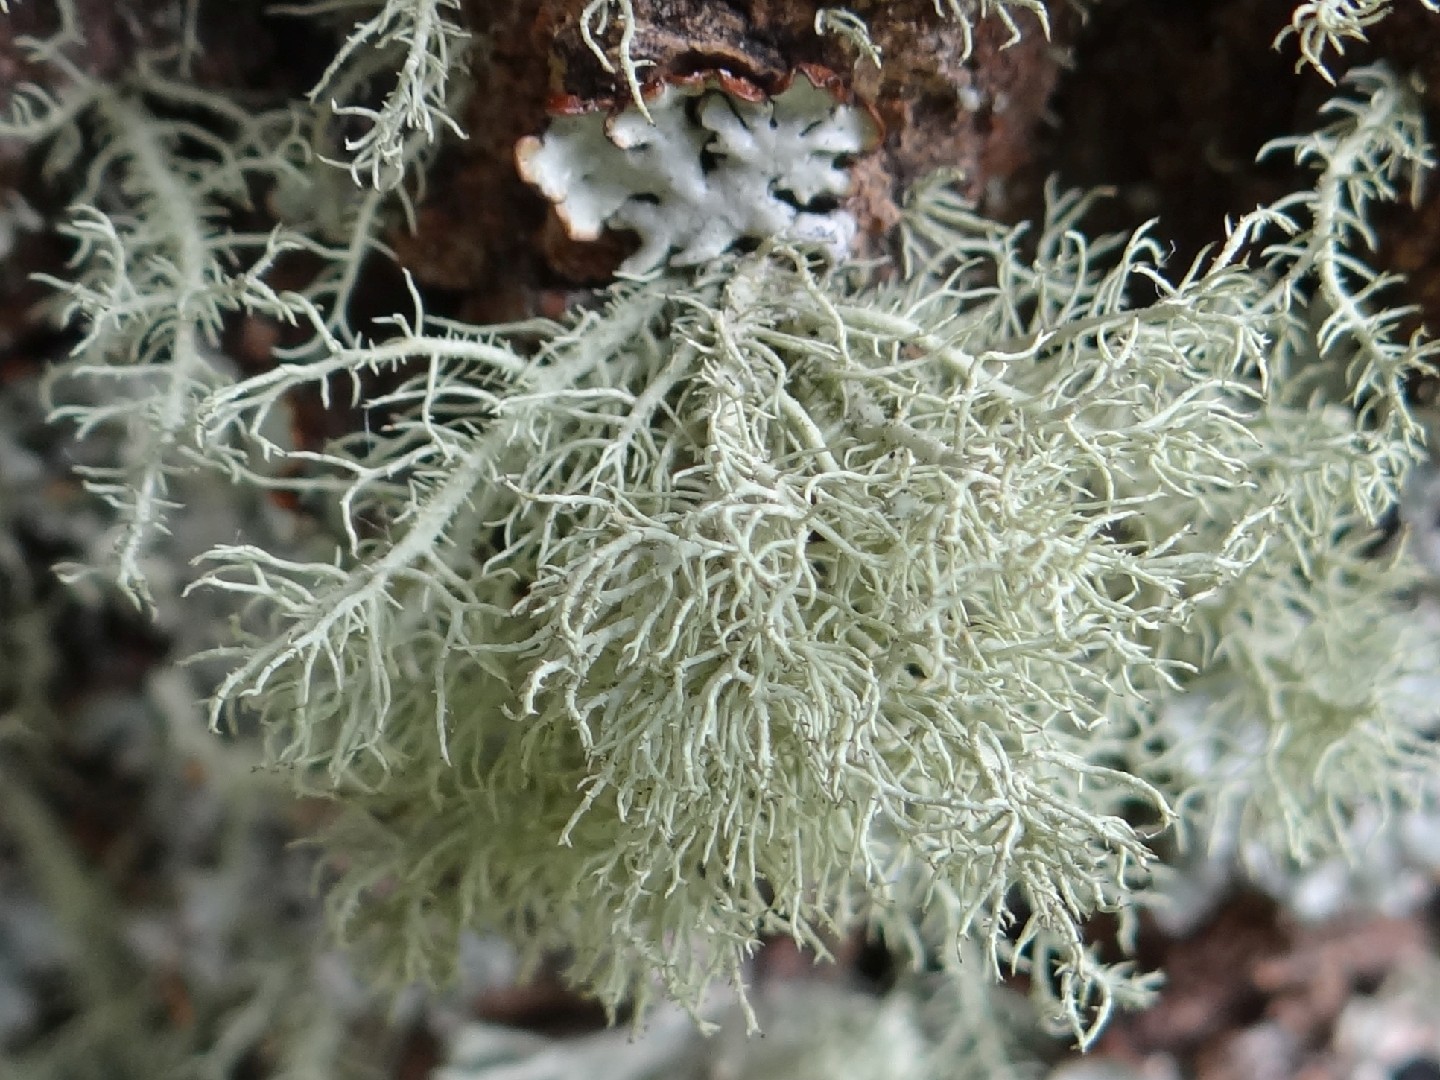 Beard lichen (Usnea hirta)